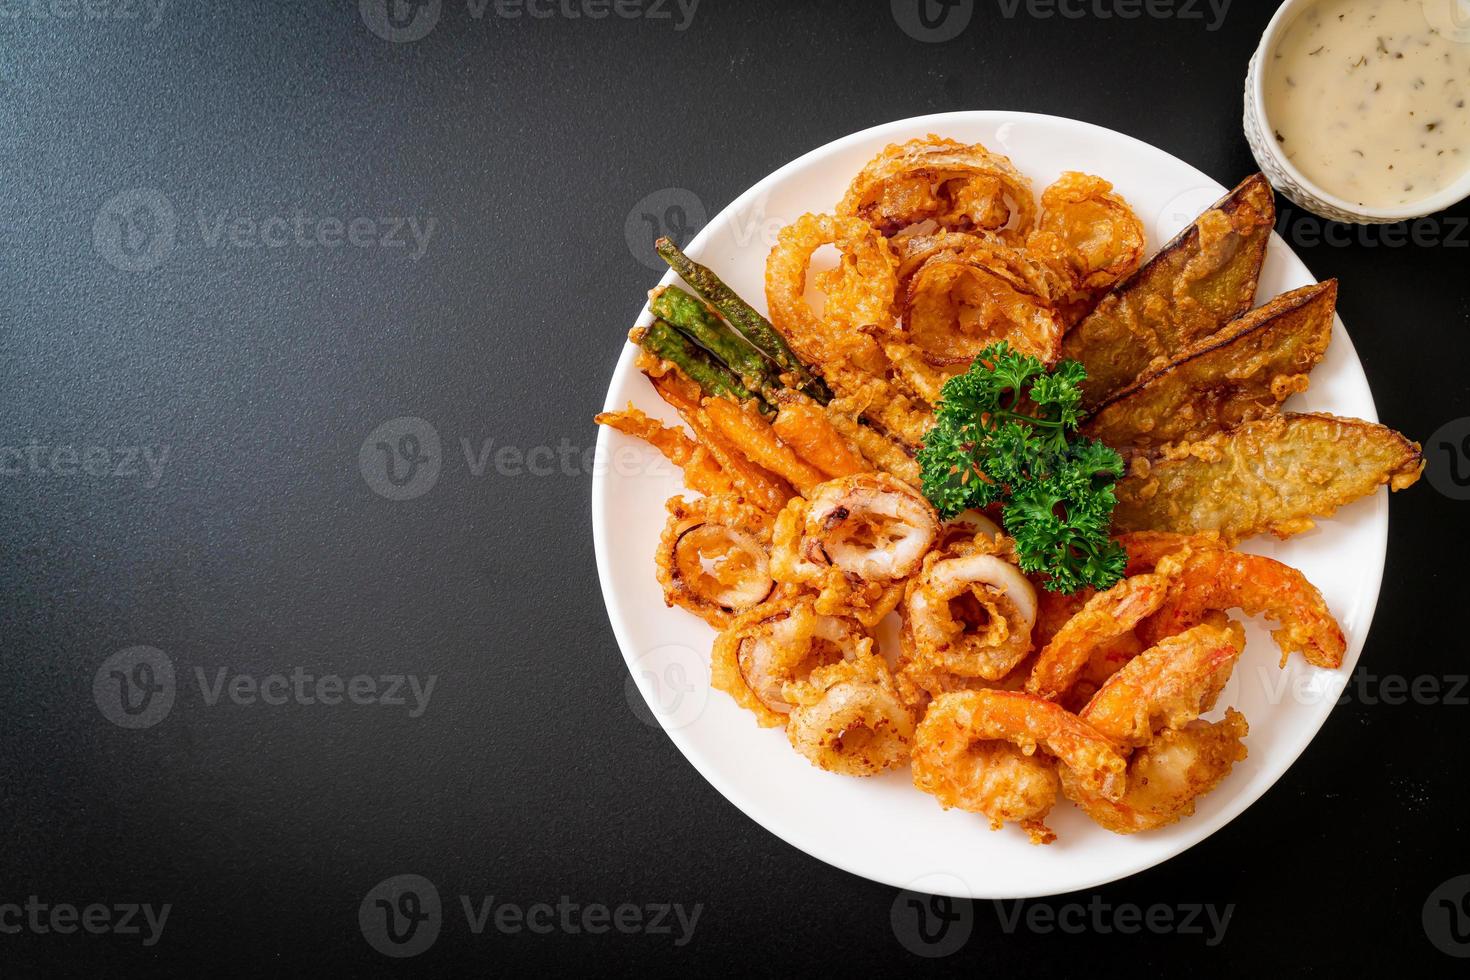 frittierte Meeresfrüchte, Shrimps und Tintenfische mit gemischtem Gemüse foto